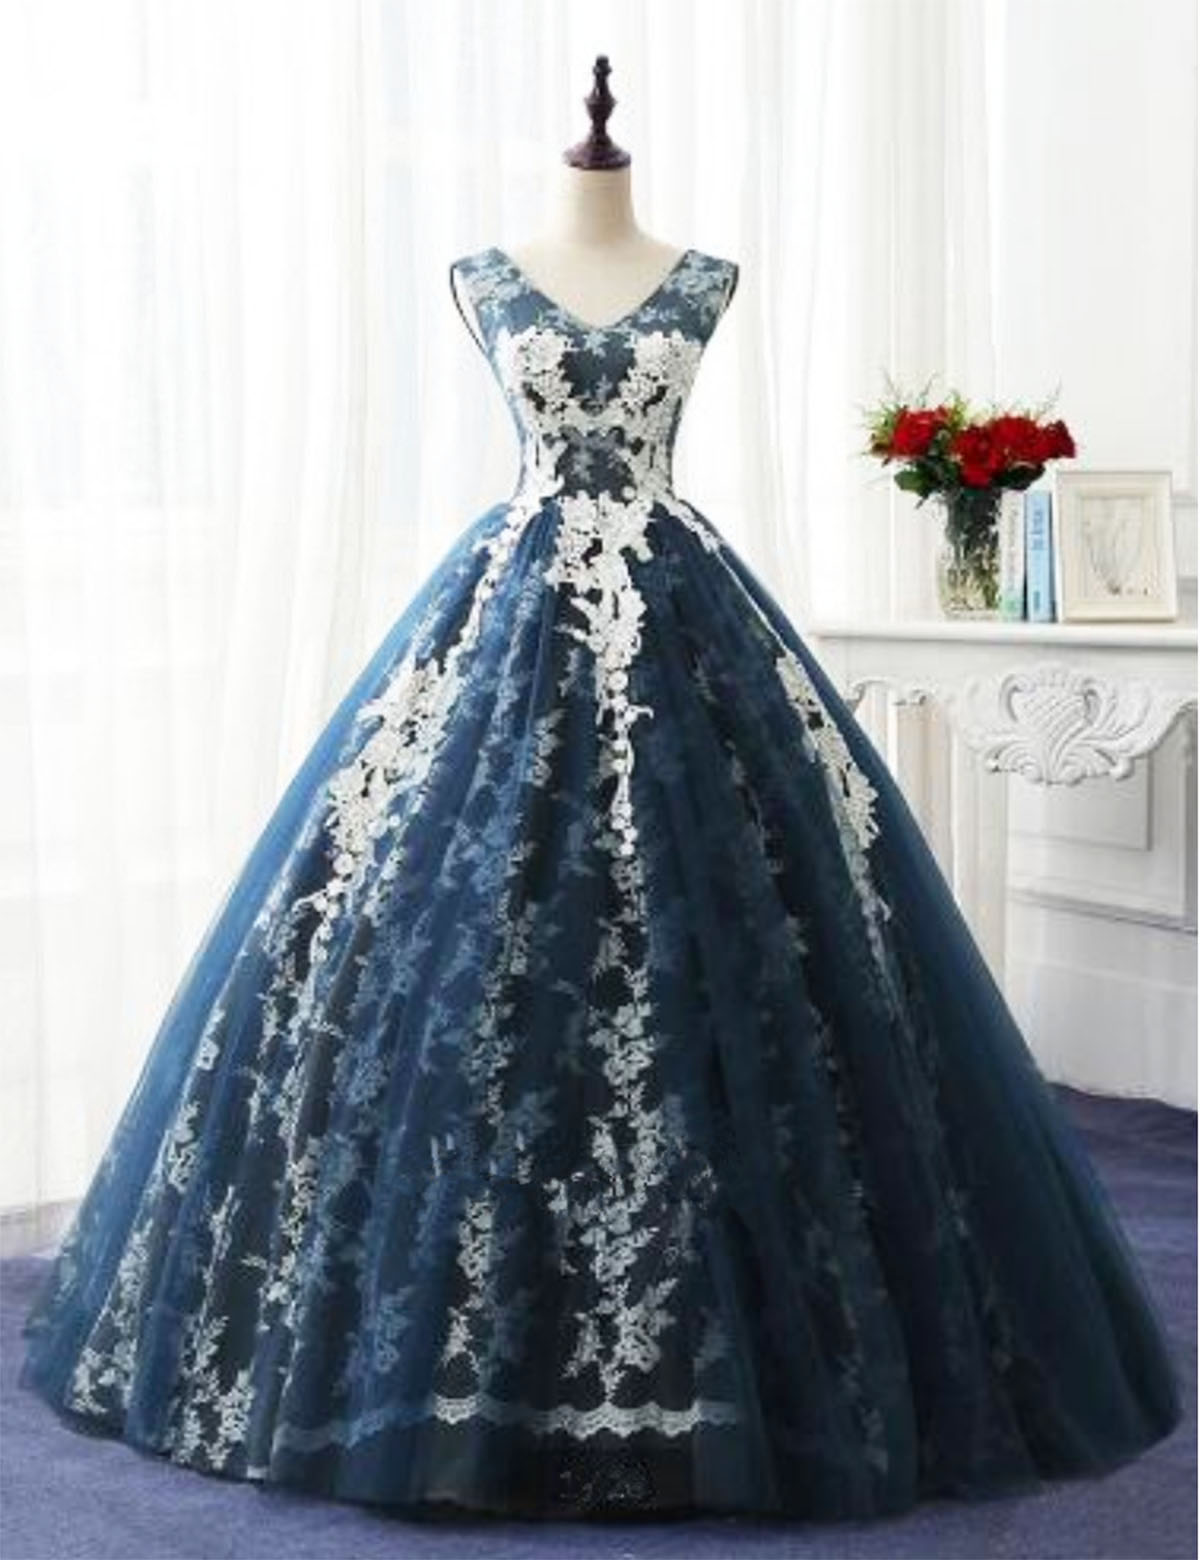 Elegant Ball Gown V-Neck Sleeveless Navy Blue Long Prom/Evening Dress ...